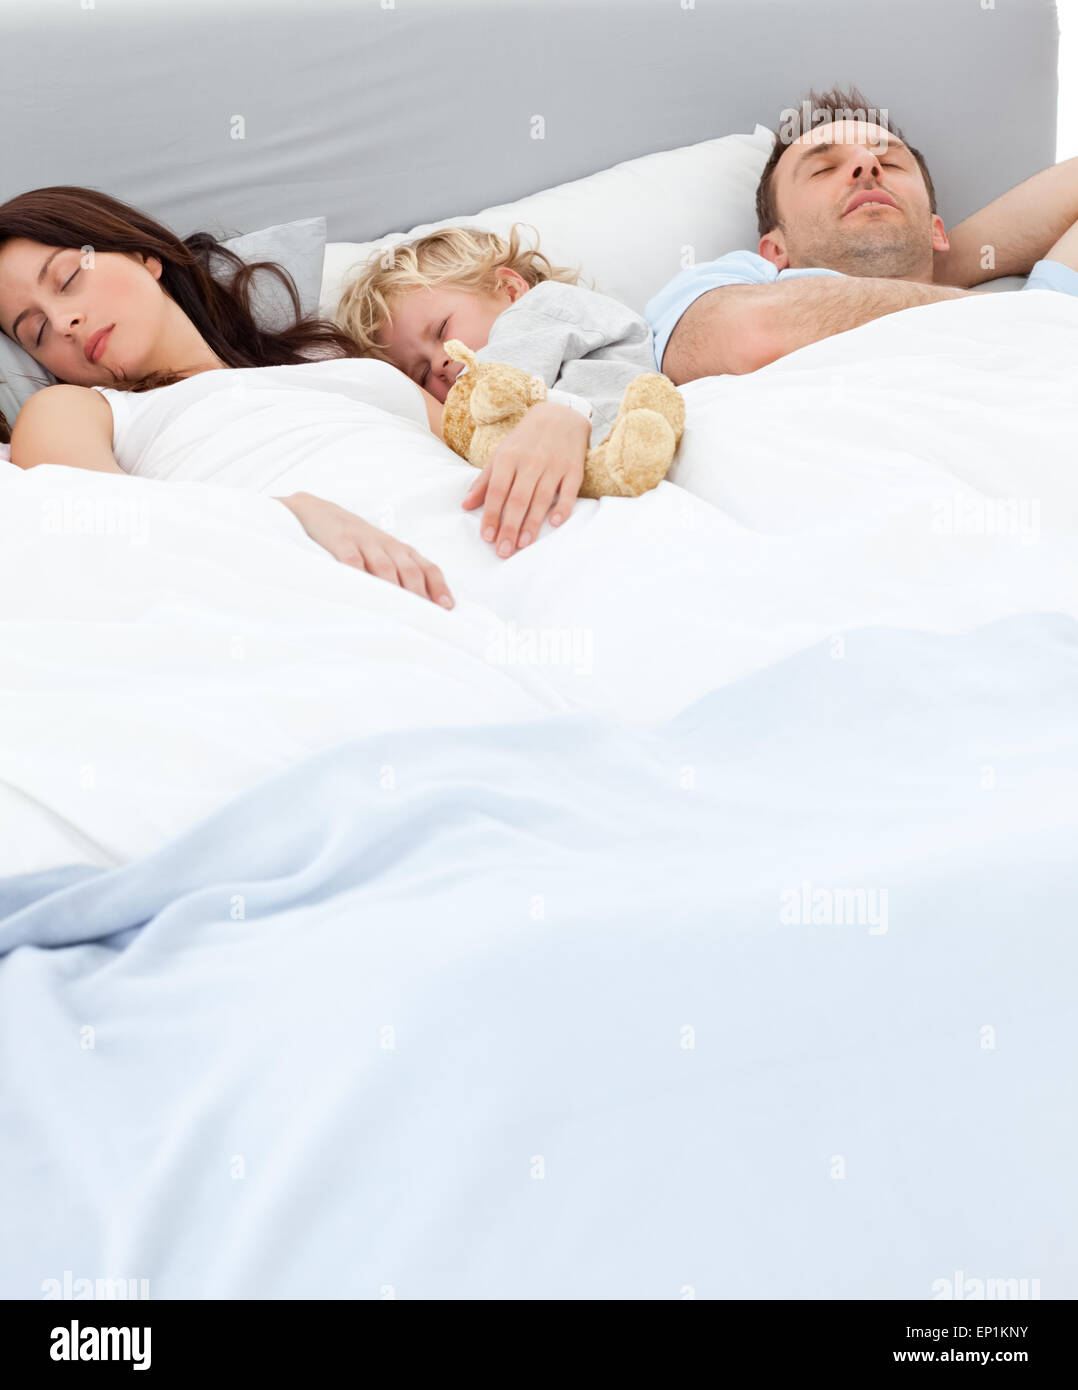 Спали вместе рассказ. Ребенок в кровати с родителями. Совместный сон. Совместный сон с ребенком. Сон с ребенком в одной постели.